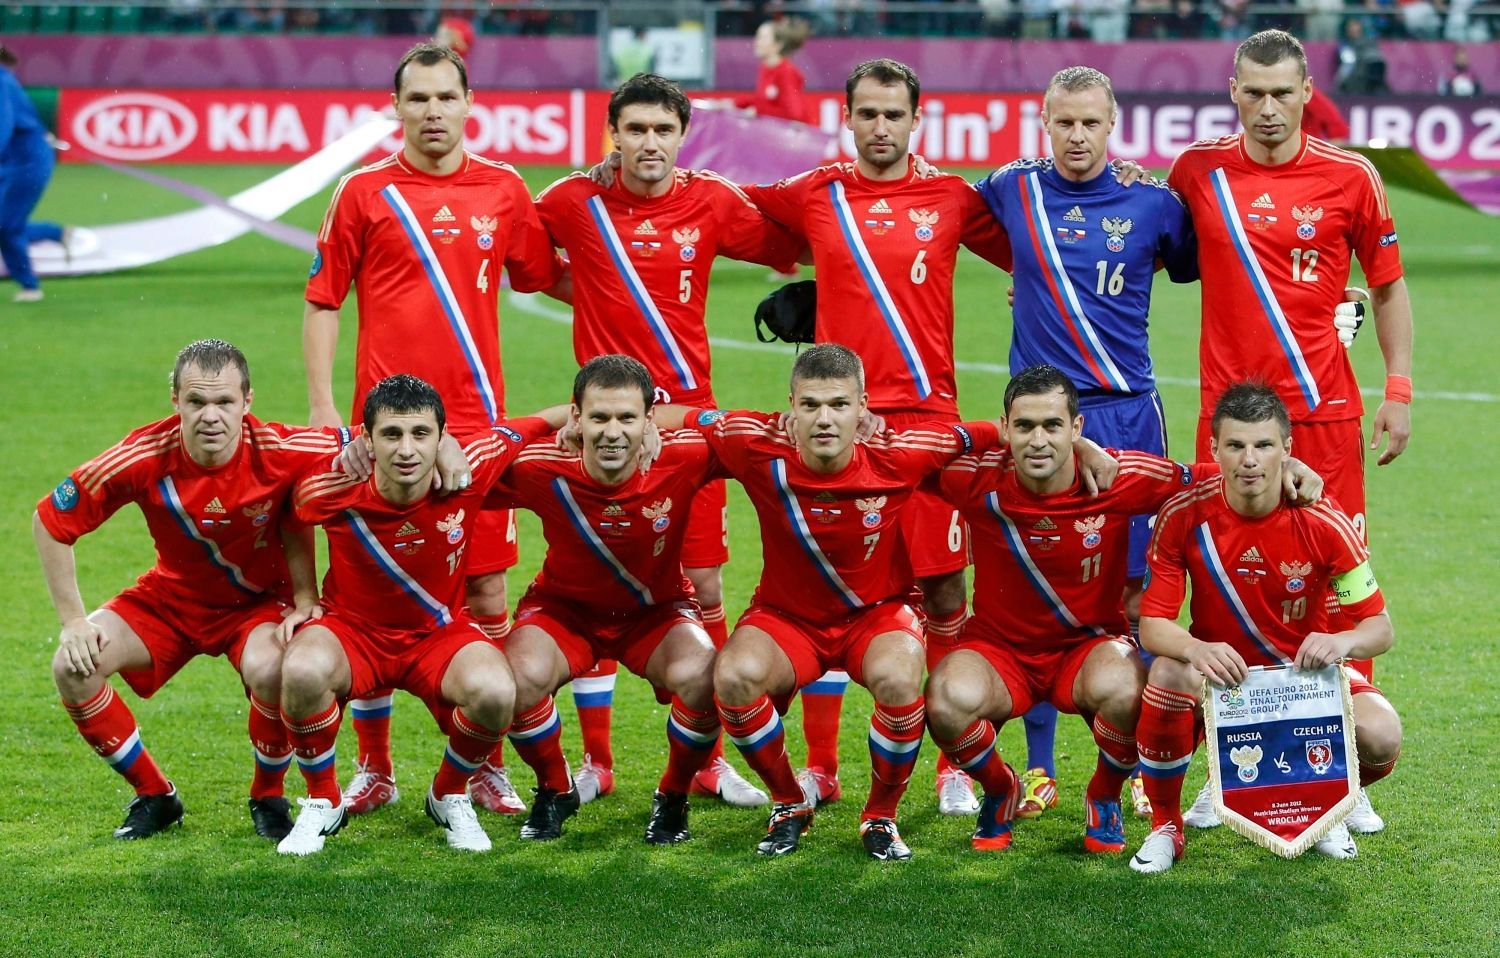 Ruské mužstvo na Euru 2012. (Rusko - Česká republika)